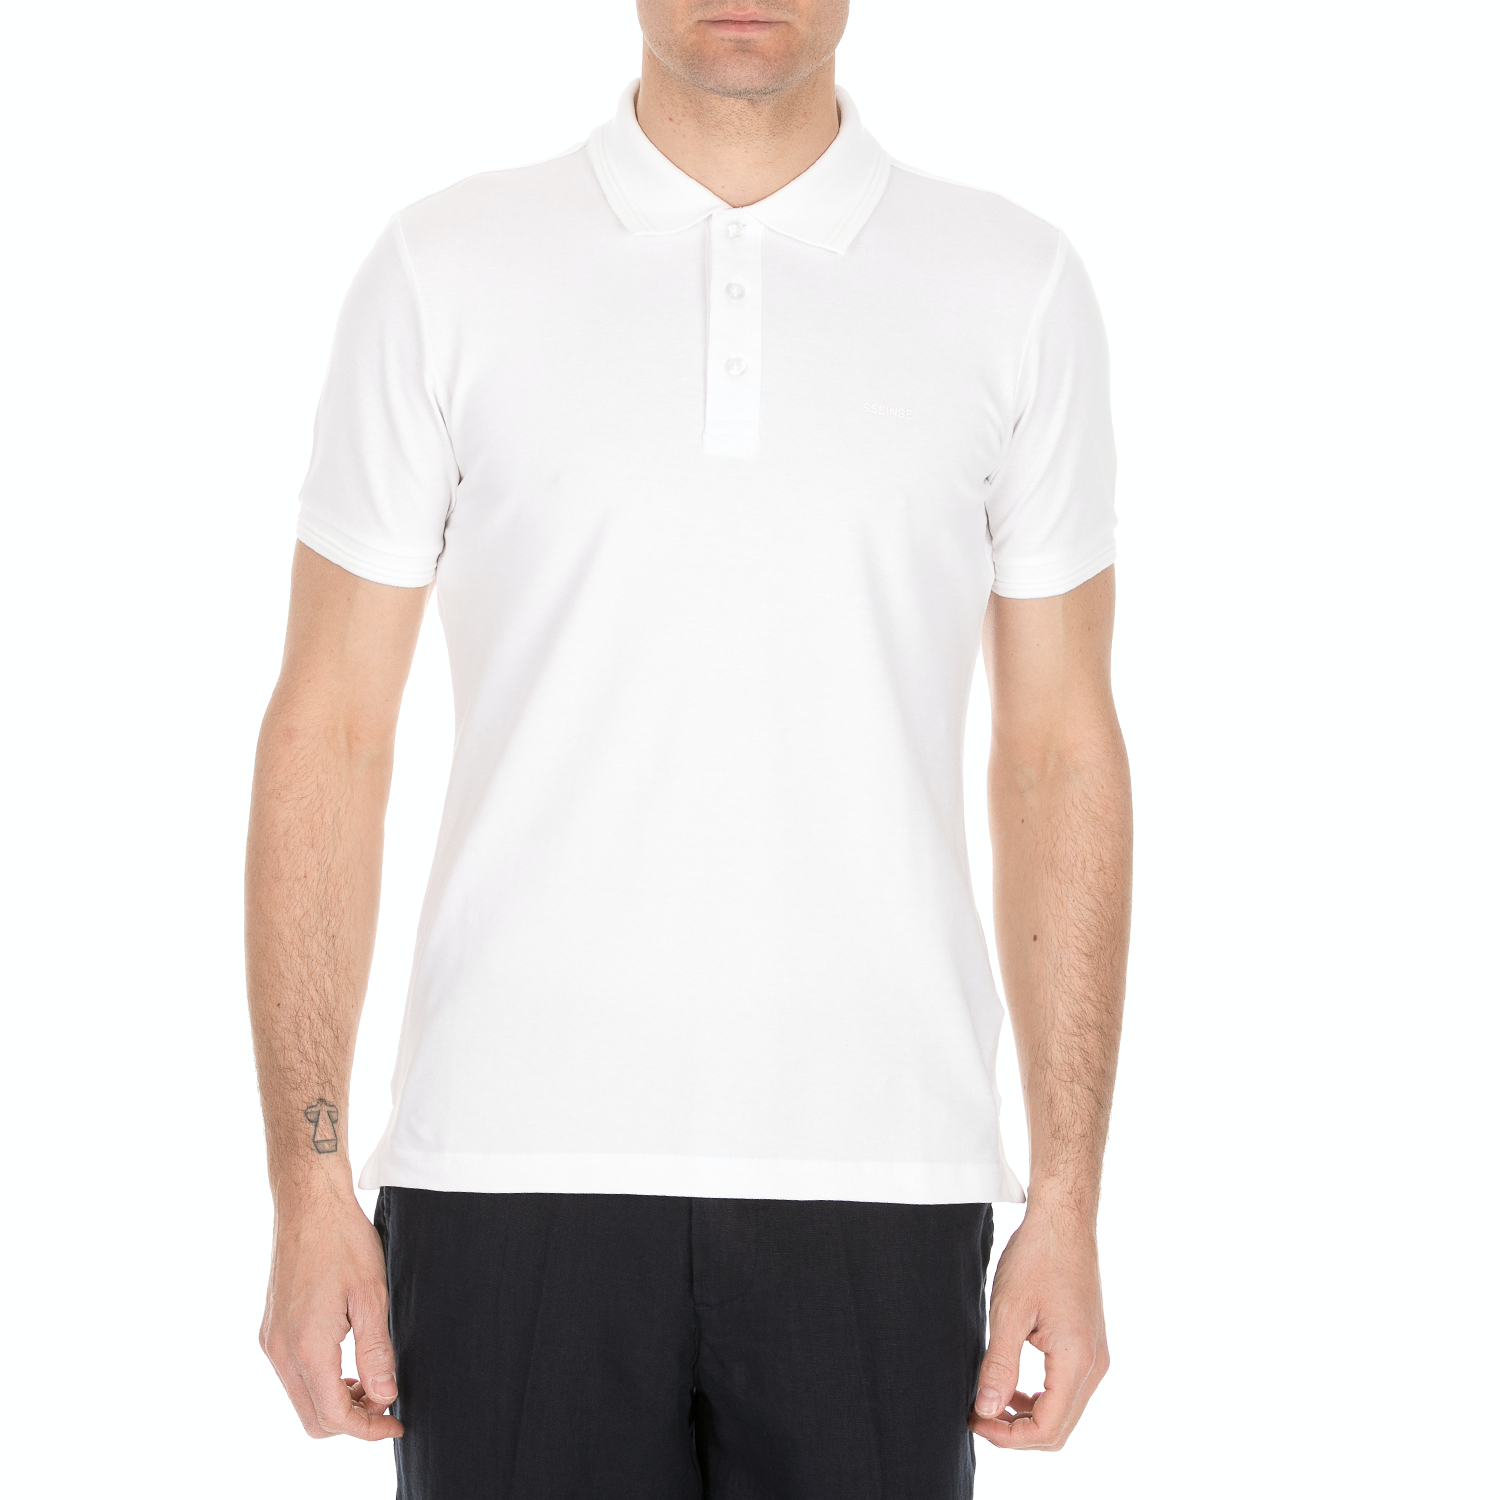 Ανδρικά/Ρούχα/Μπλούζες/Πόλο SSEINSE - Ανδρική κοντομάνικη polo μπλούζα SSEINSE λευκή